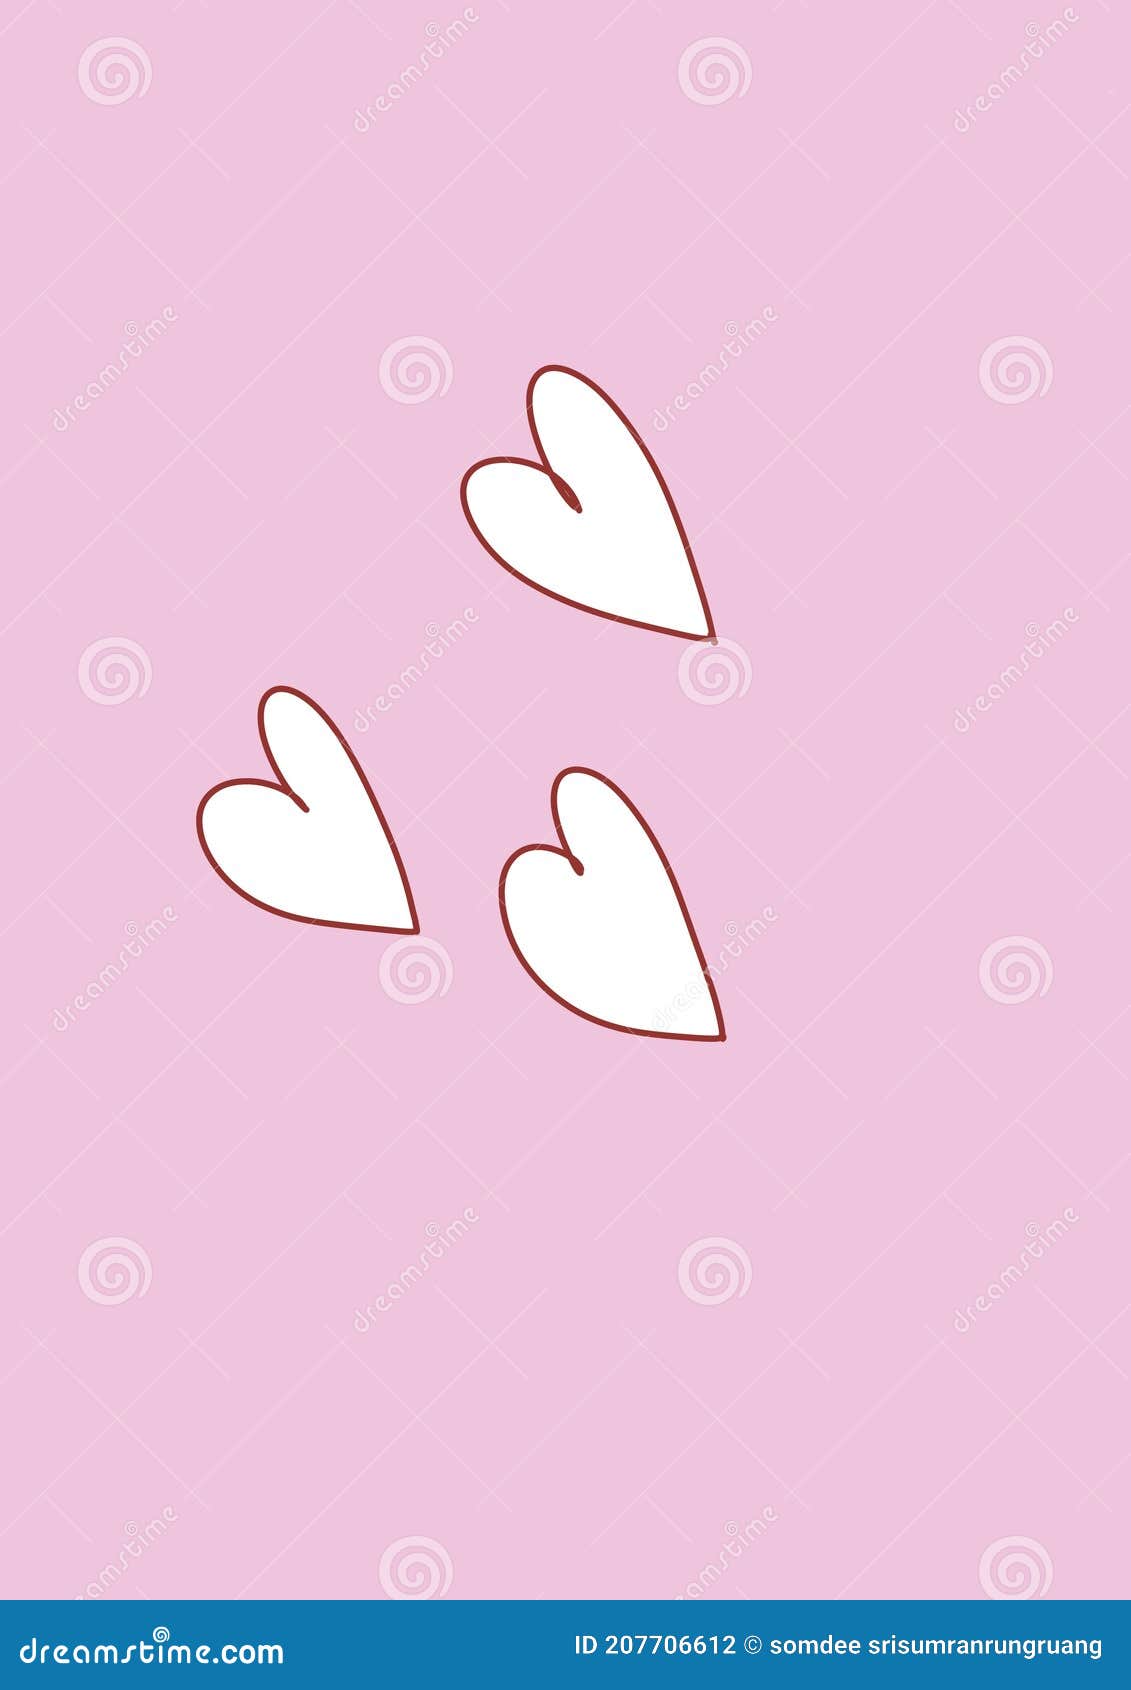 Nền hồng với trái tim trắng là một thiết kế đơn giản nhưng rất ấn tượng. Với sắc hồng tươi sáng cùng hình ảnh trái tim trắng, nền hình này sẽ giúp cho trang trí của bạn thêm phần nữ tính và ngọt ngào. Đặc biệt, bạn còn có thể sử dụng nền hình này làm hình nền cho điện thoại của mình. Cùng khám phá ngay nào!